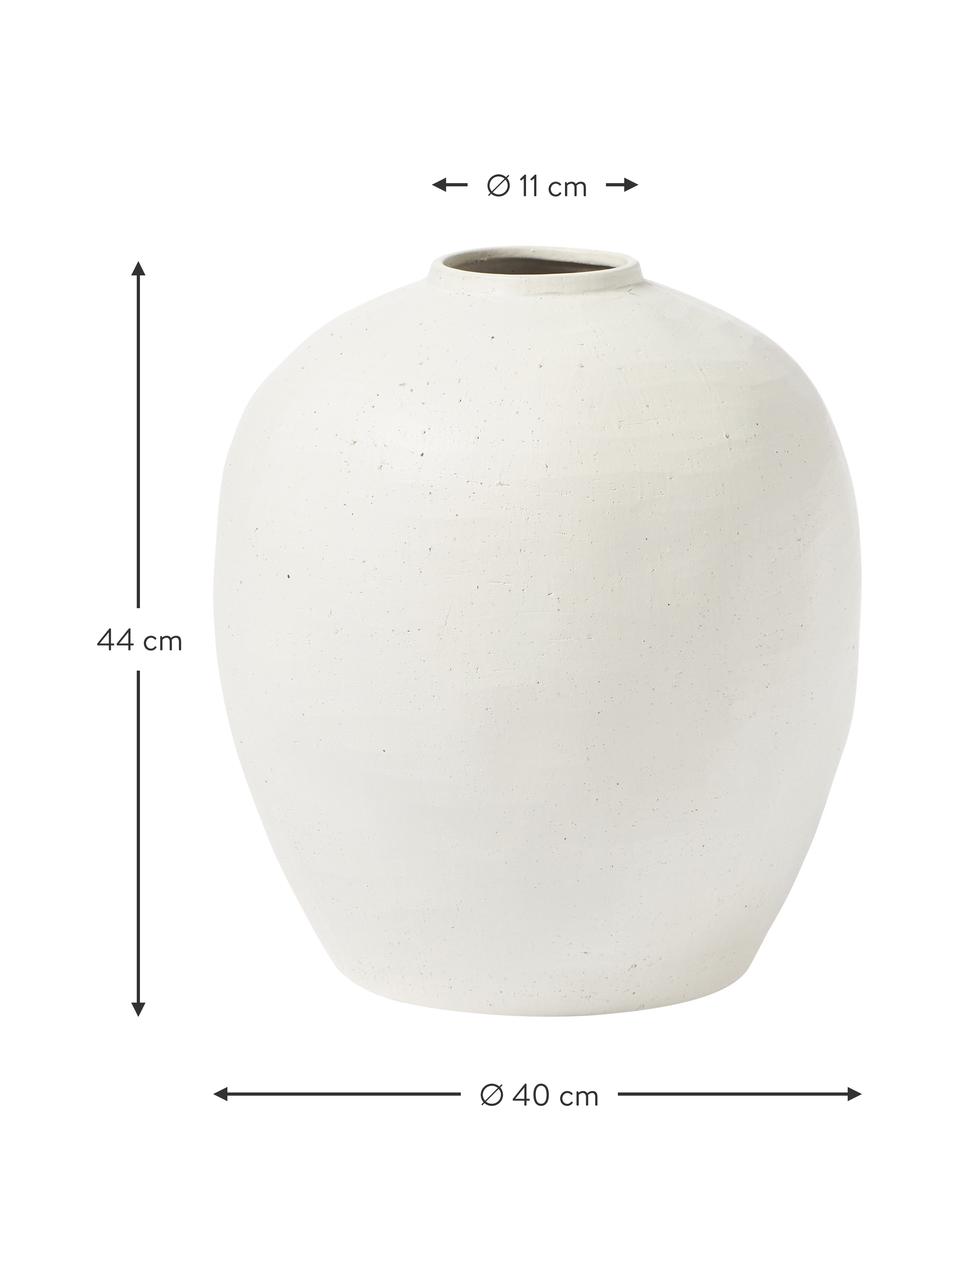 Podlahová váza Bruno z kameniny, Kamenina, Bílá, Ø 40 cm, V 44 cm